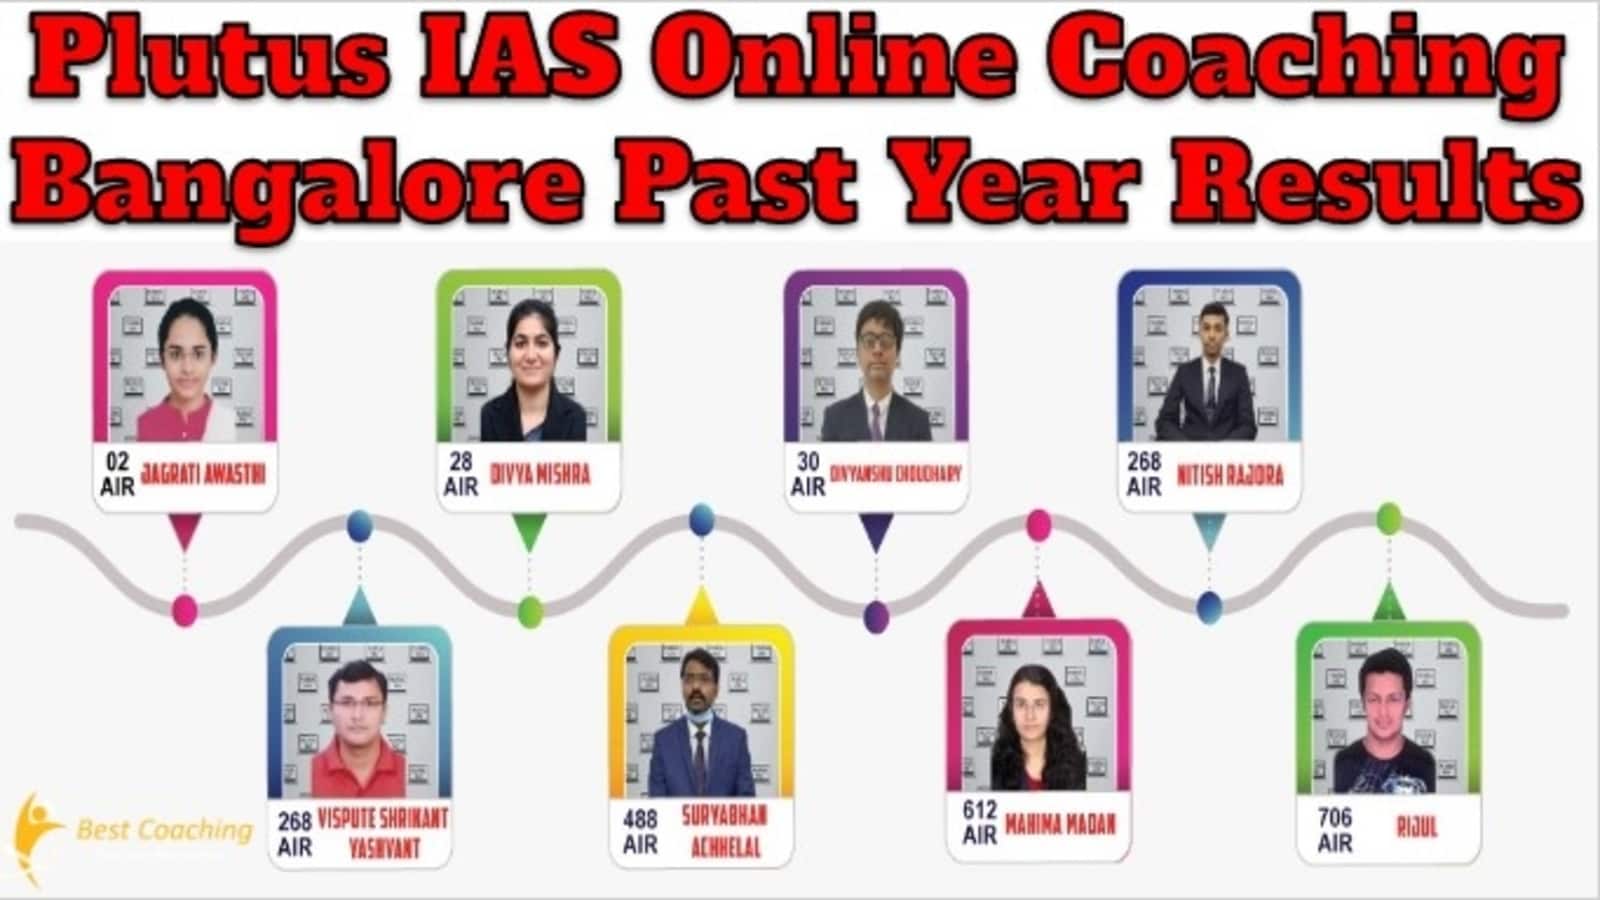 Plutus IAS Online Coaching Bangalore Past Year Results